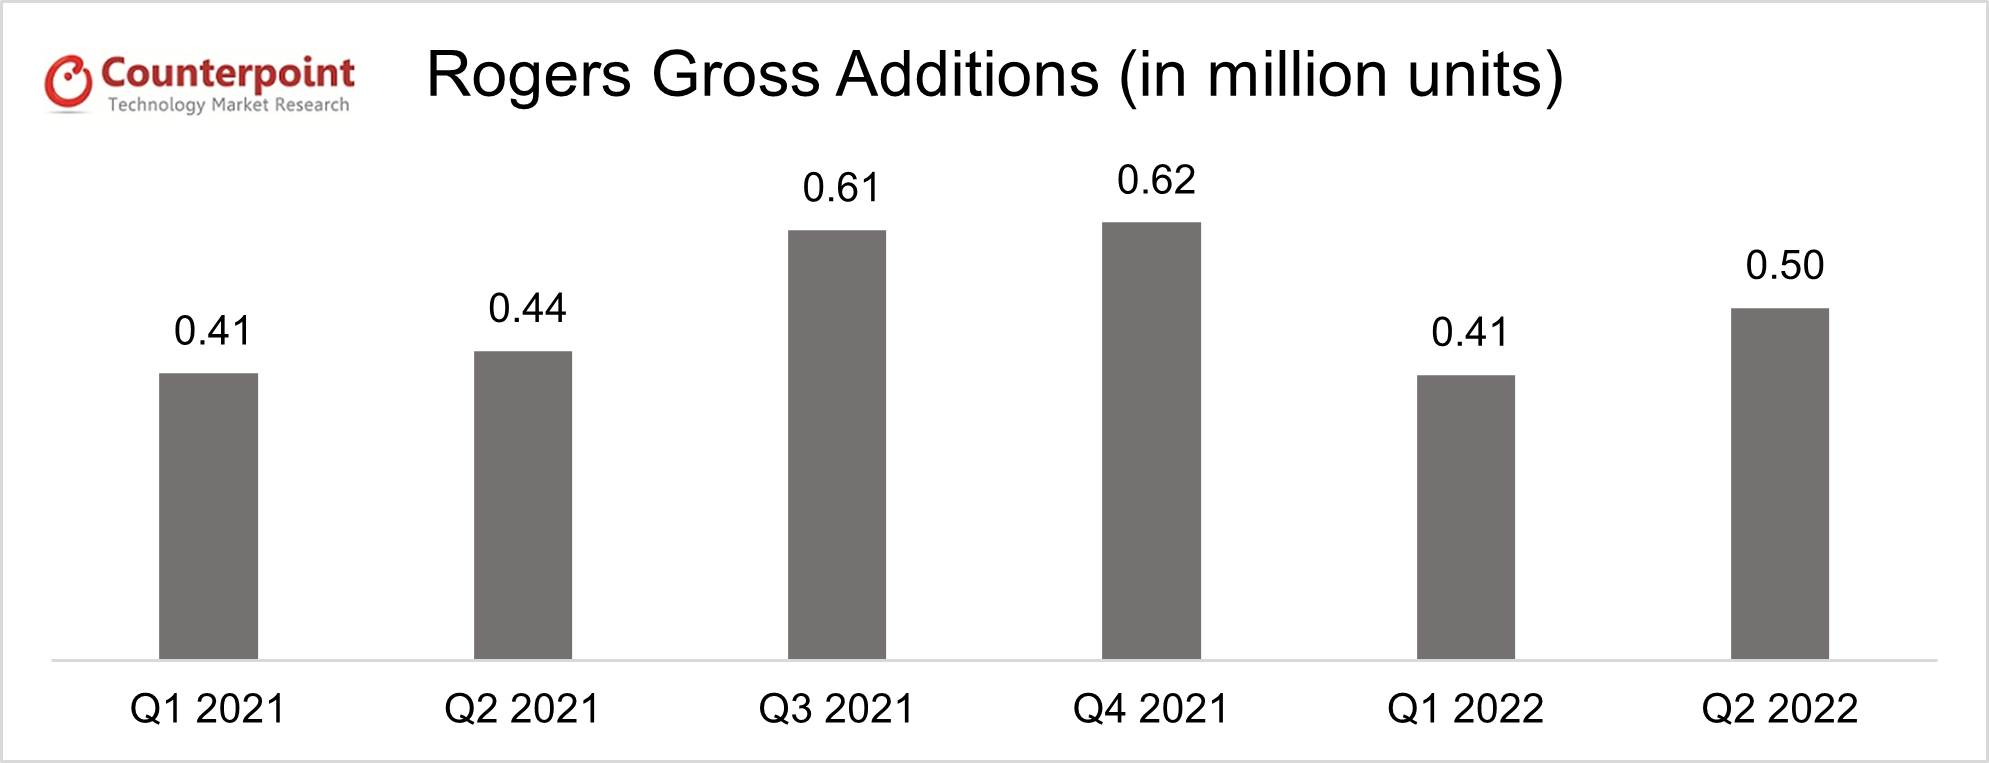 Rogers Gross Adds_q2 2022